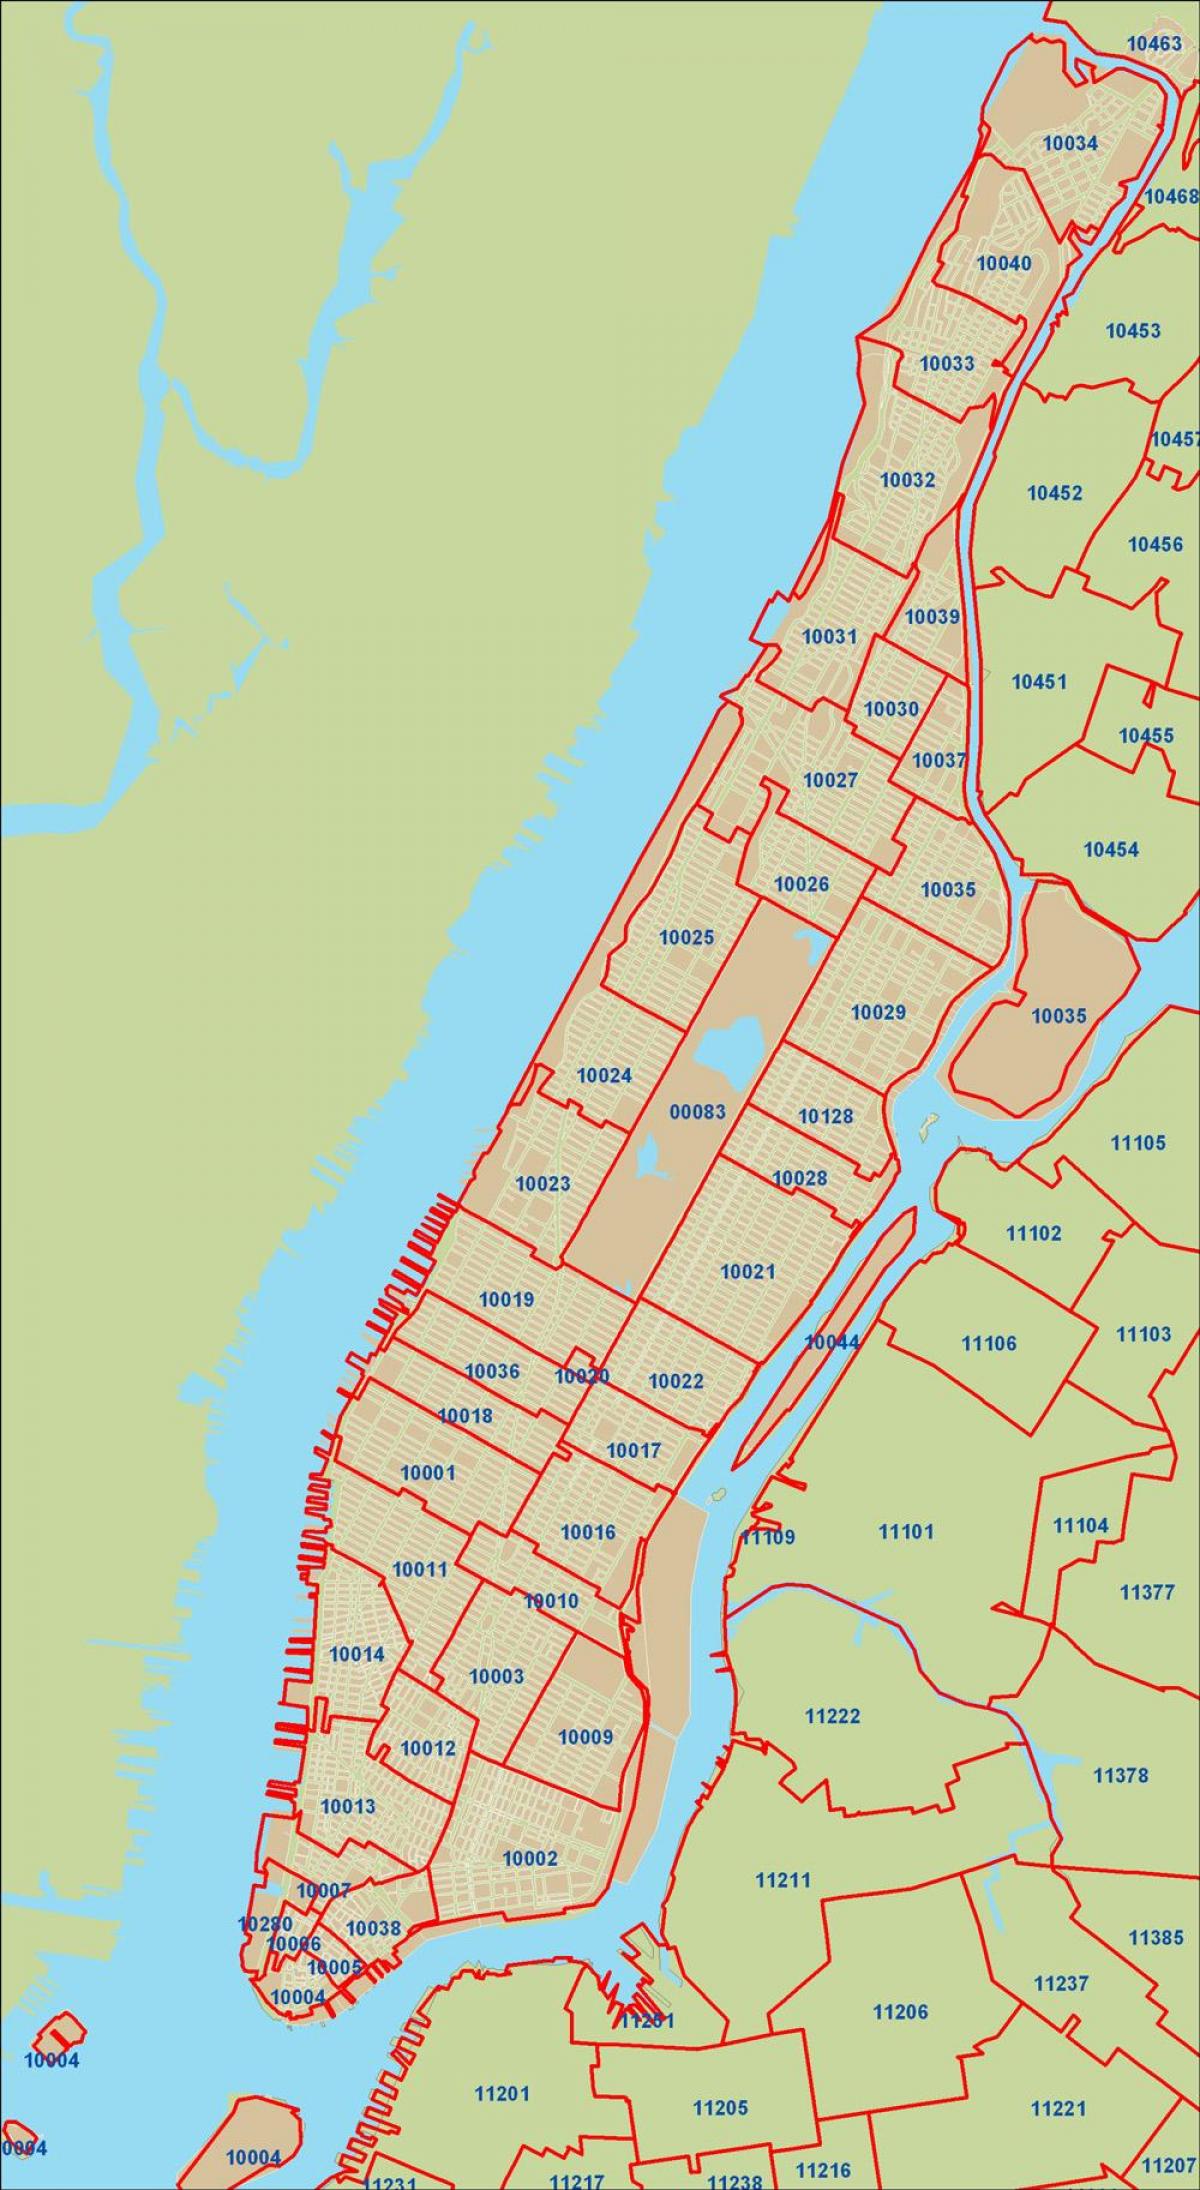 ЗІП код Нью-Йорка Manhattan карта